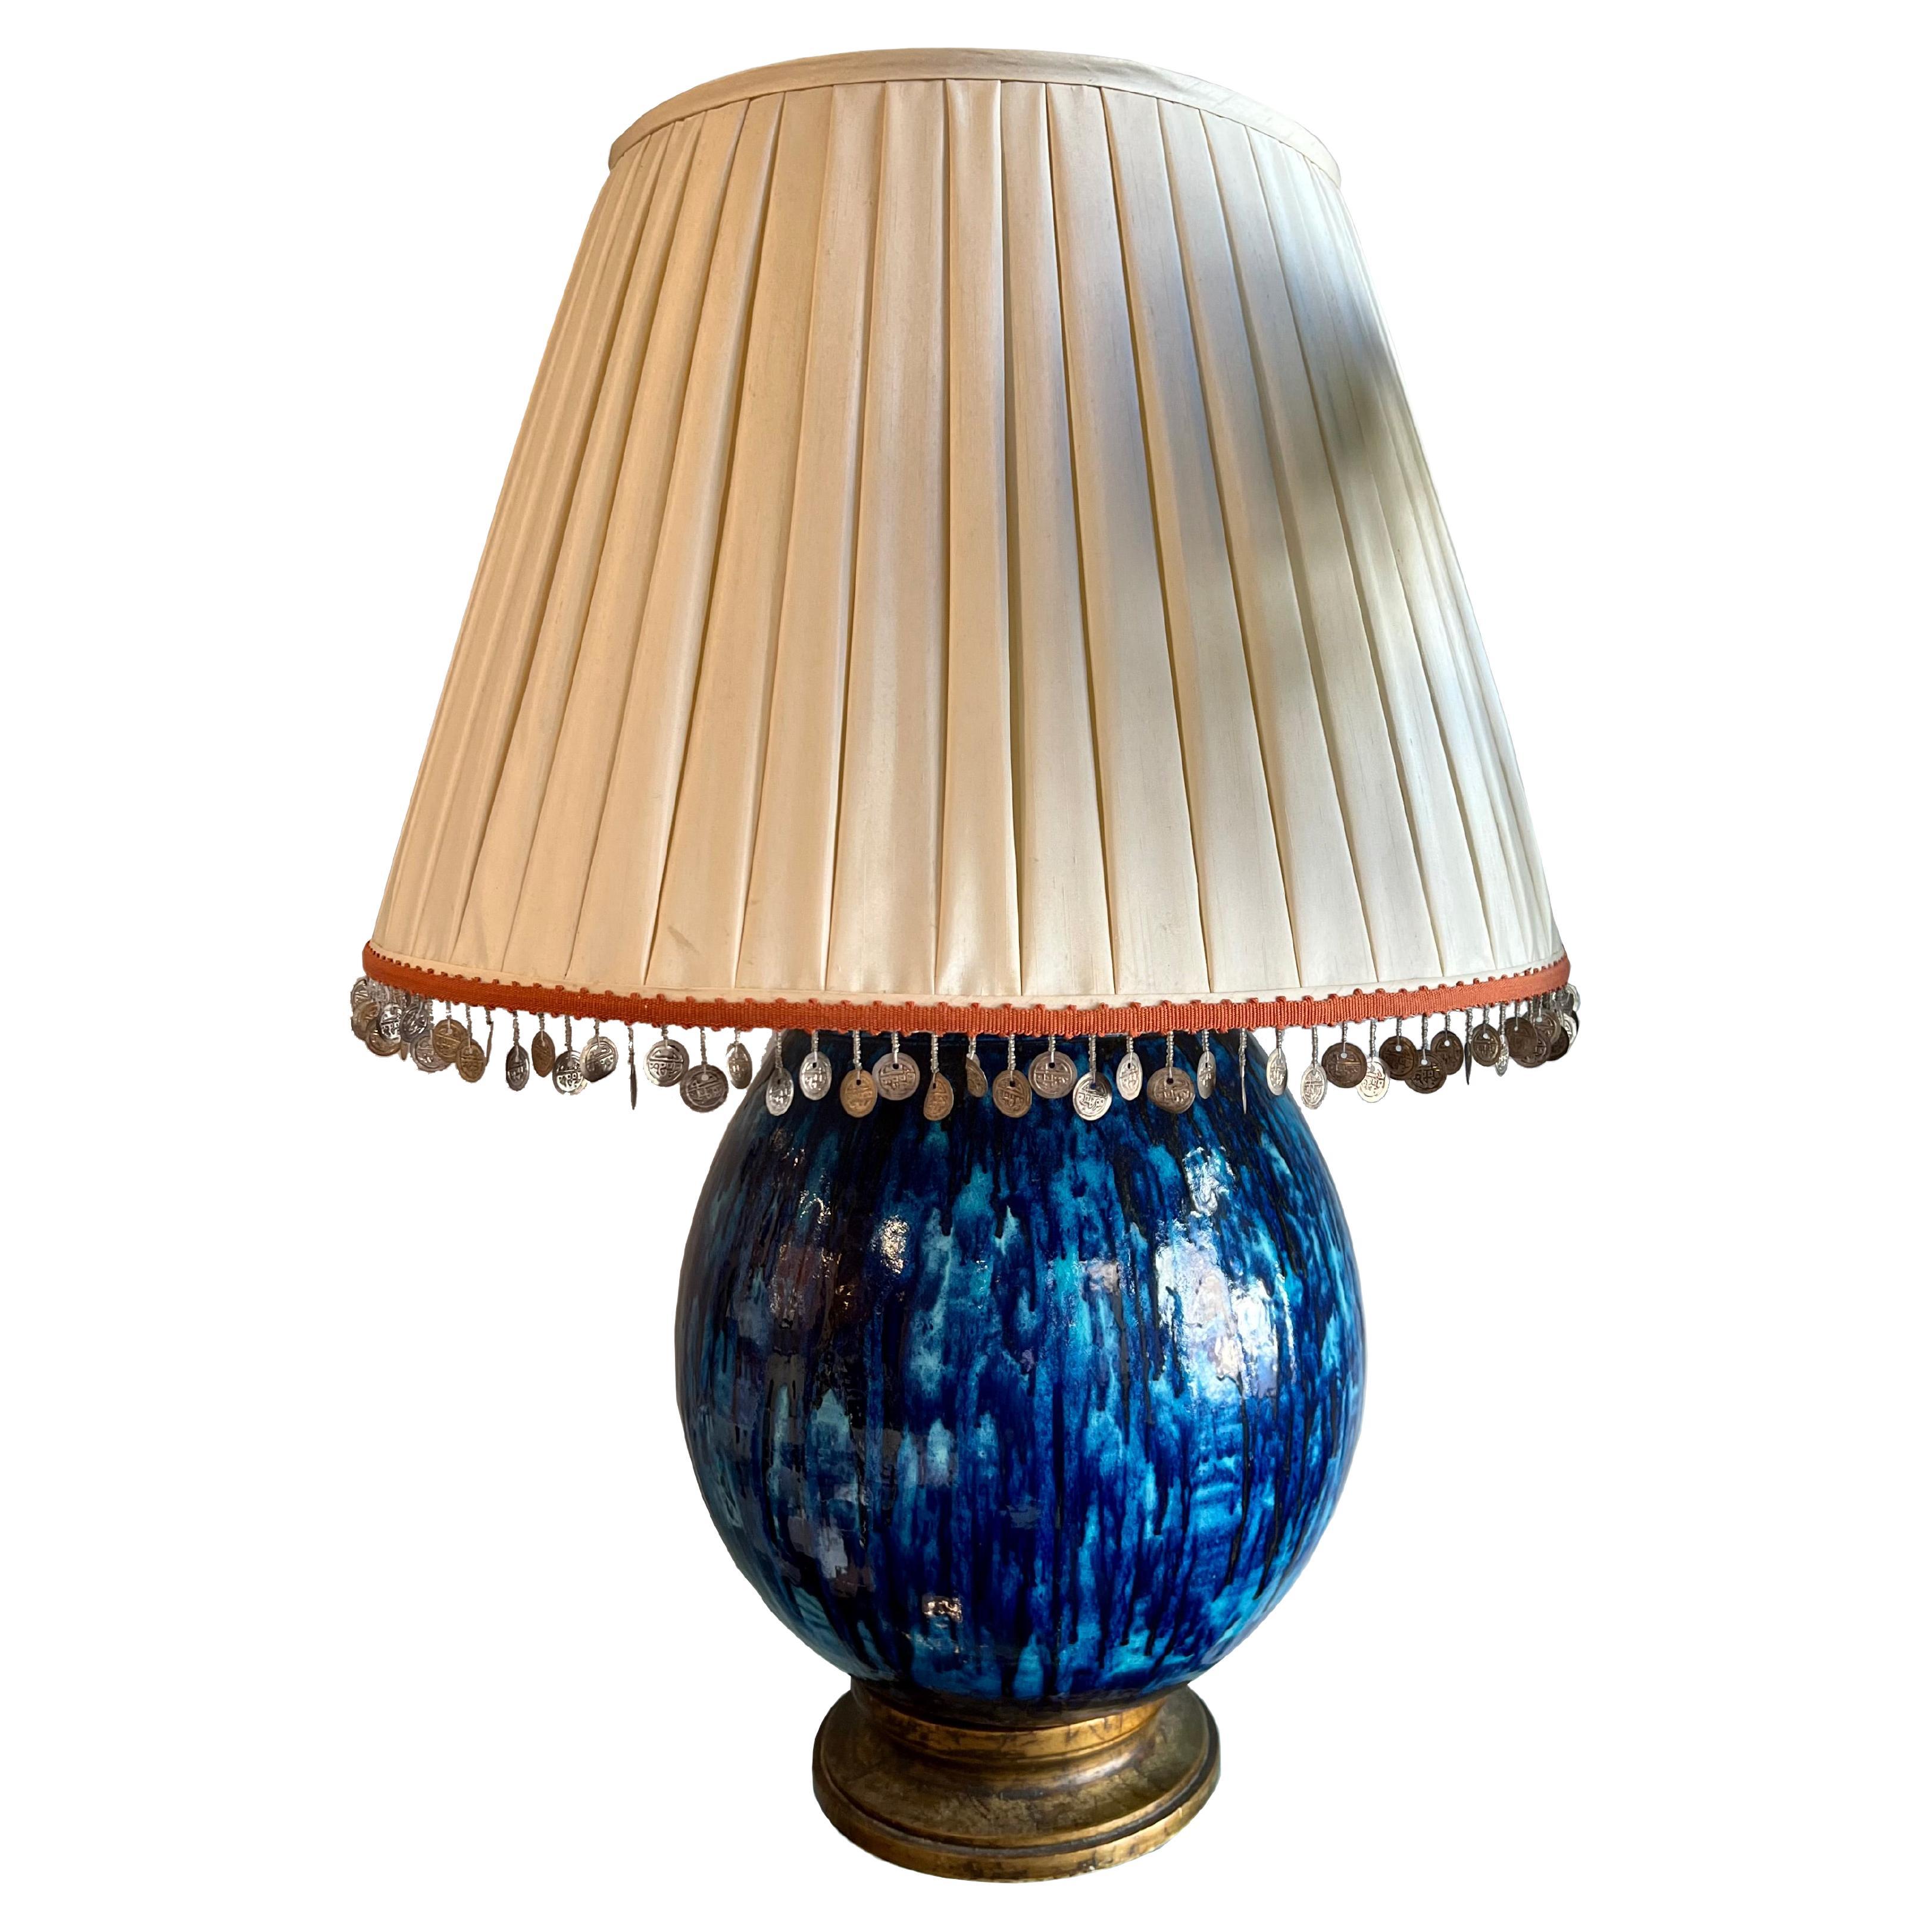 70's Ceramic Blue Glazed Lamp